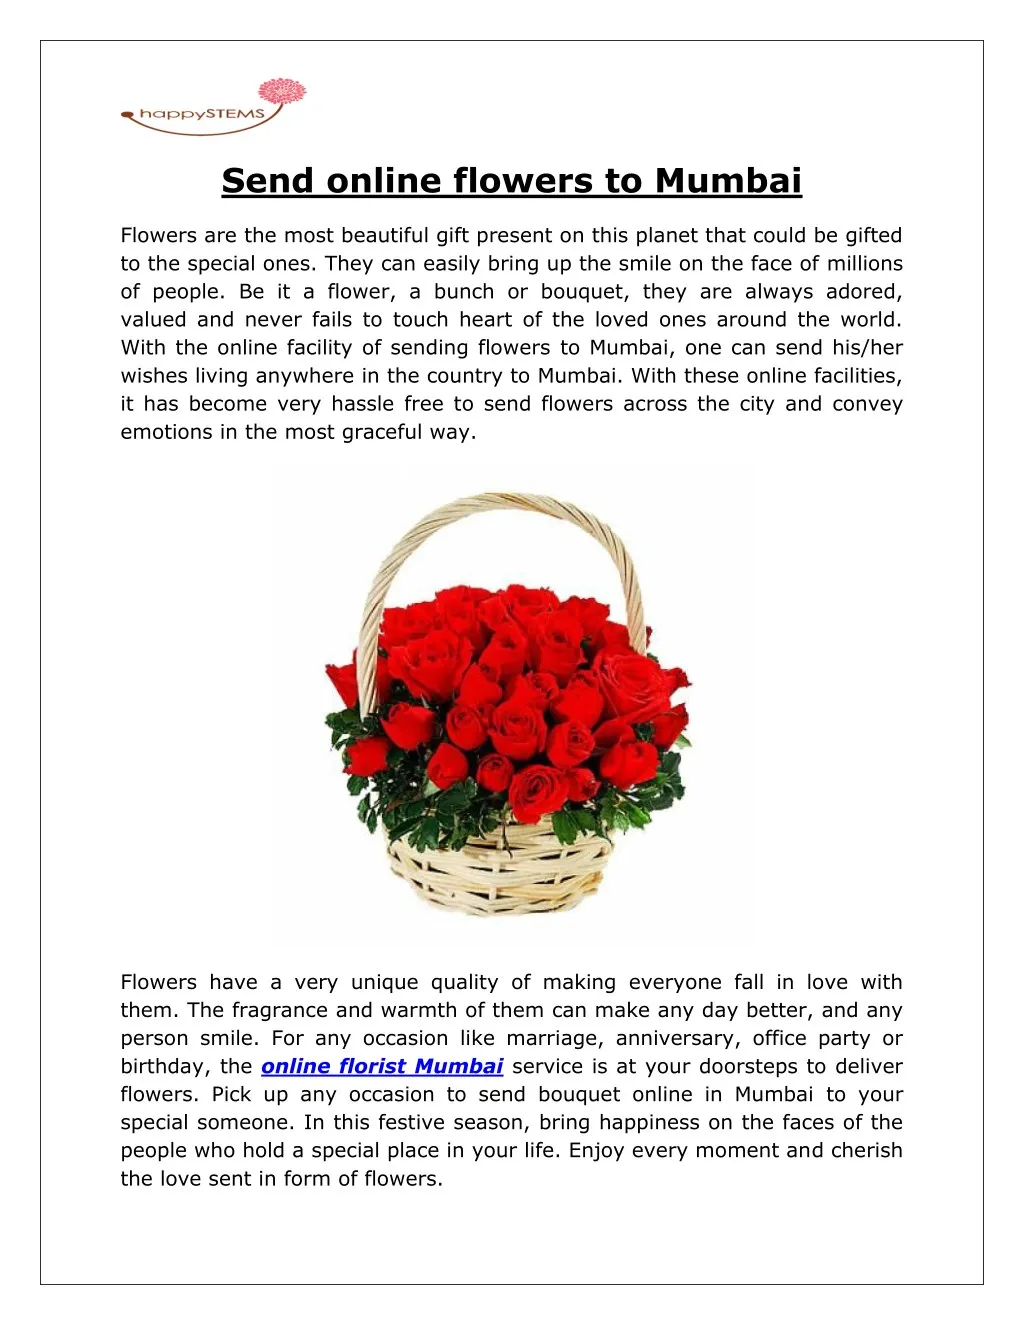 send online flowers to mumbai